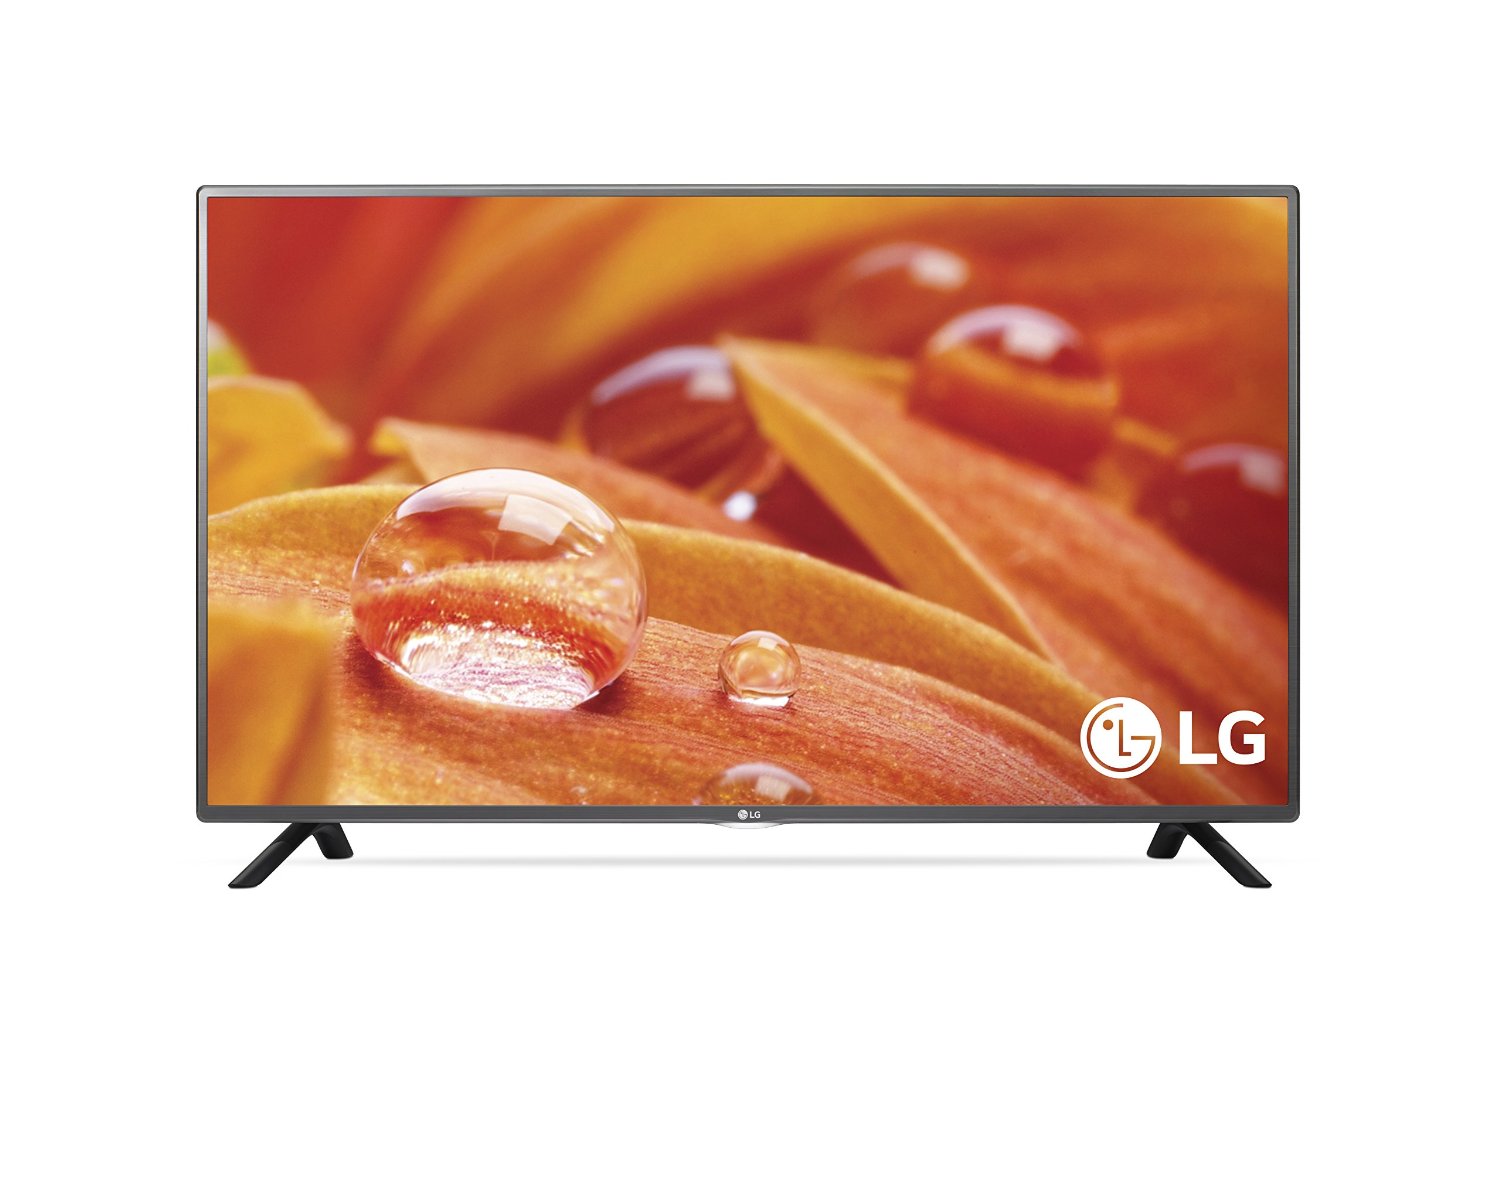 LG Electronics 32LF595B 32-Inch 720p Smart LED TV